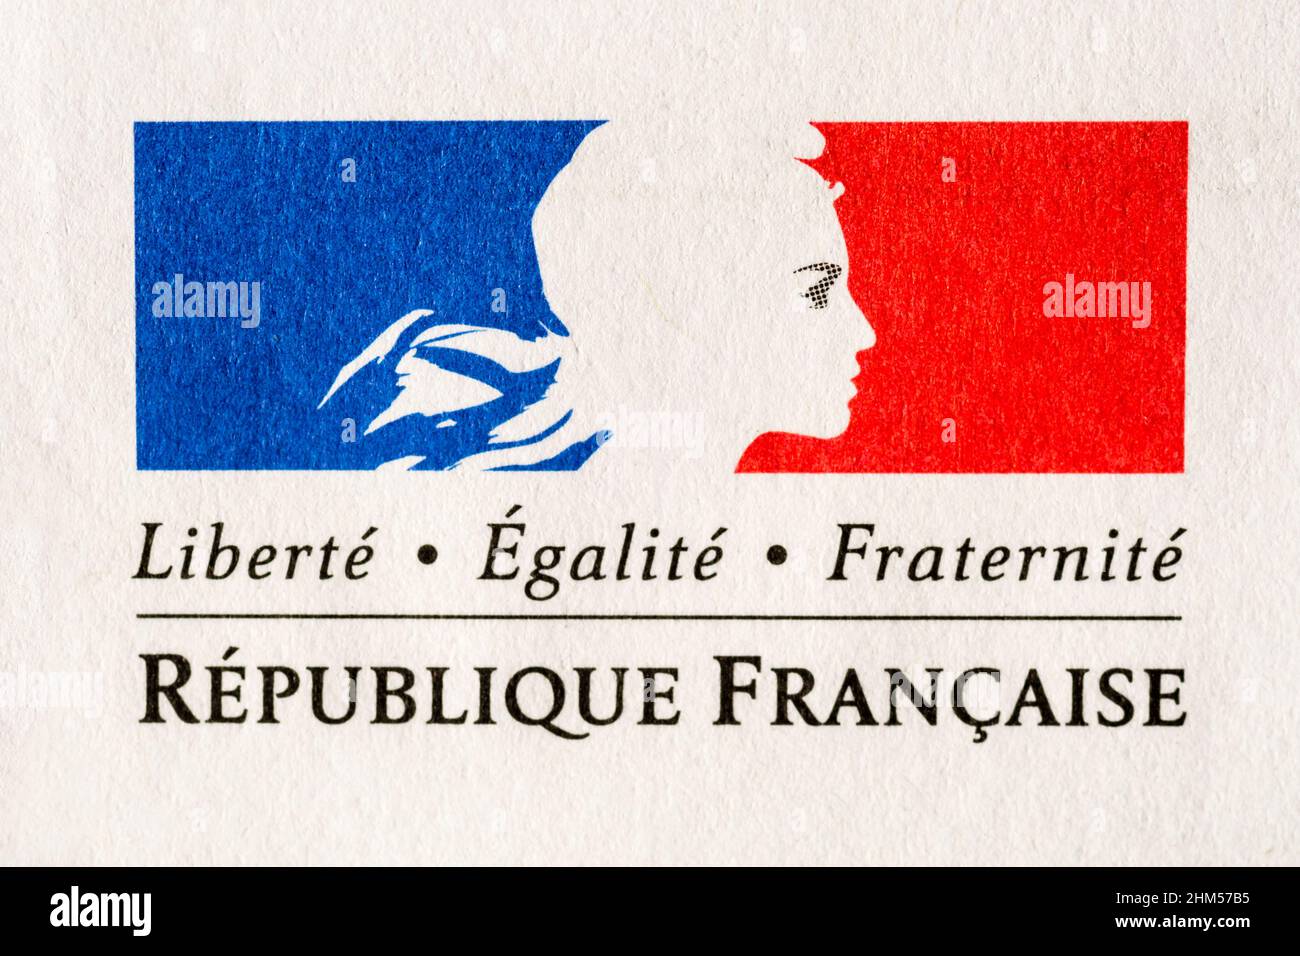 Liberté Equalité Fraternité, das Motto der Französischen Republik, gedruckt auf einem offiziellen Dokument. Stockfoto